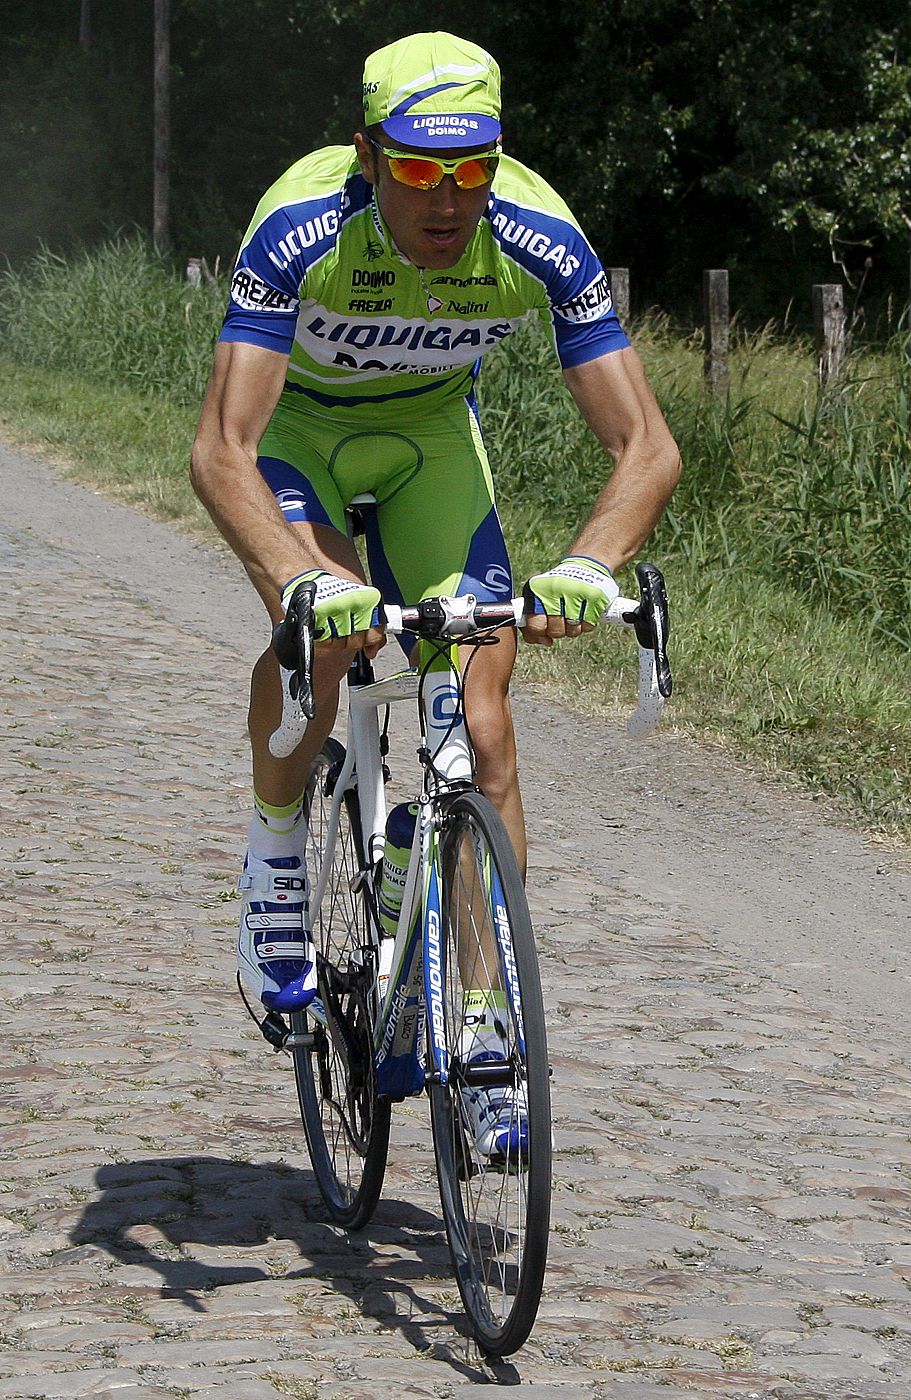 Ivan Basso, campeón del útlimo Giro de Italia, quiere repetir victoria en el Tour